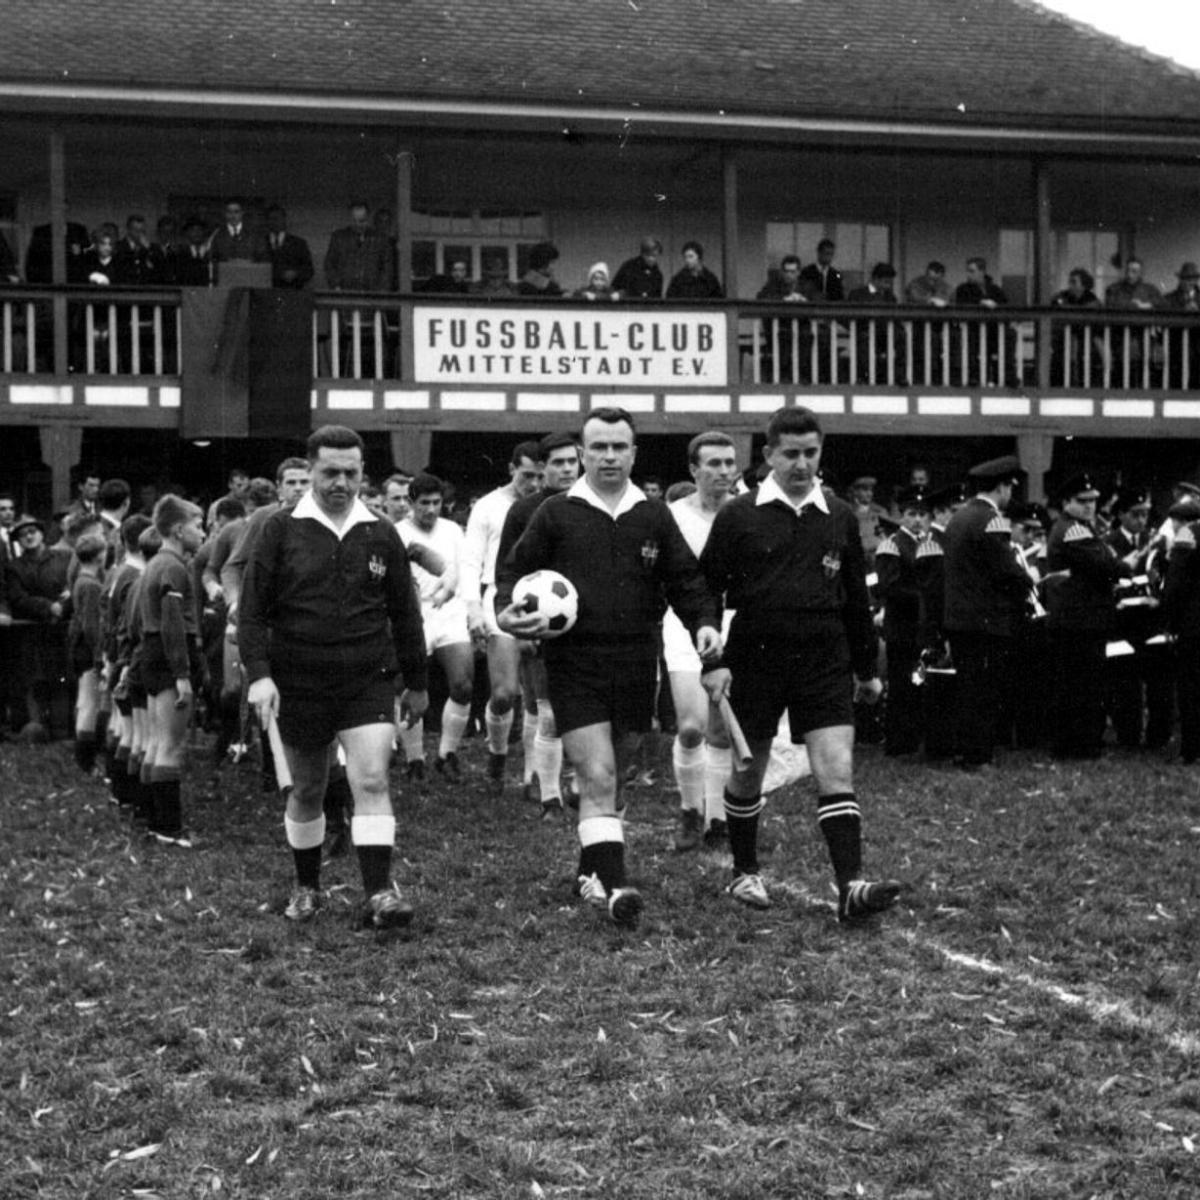 1965: Benefizspiel für die Hinterbliebenen vom Schachtunfall - FC Mittelstadt vs. Auswahl der 7. US-Armee - Spielereinmarsch (Quelle: Bernd Bader)